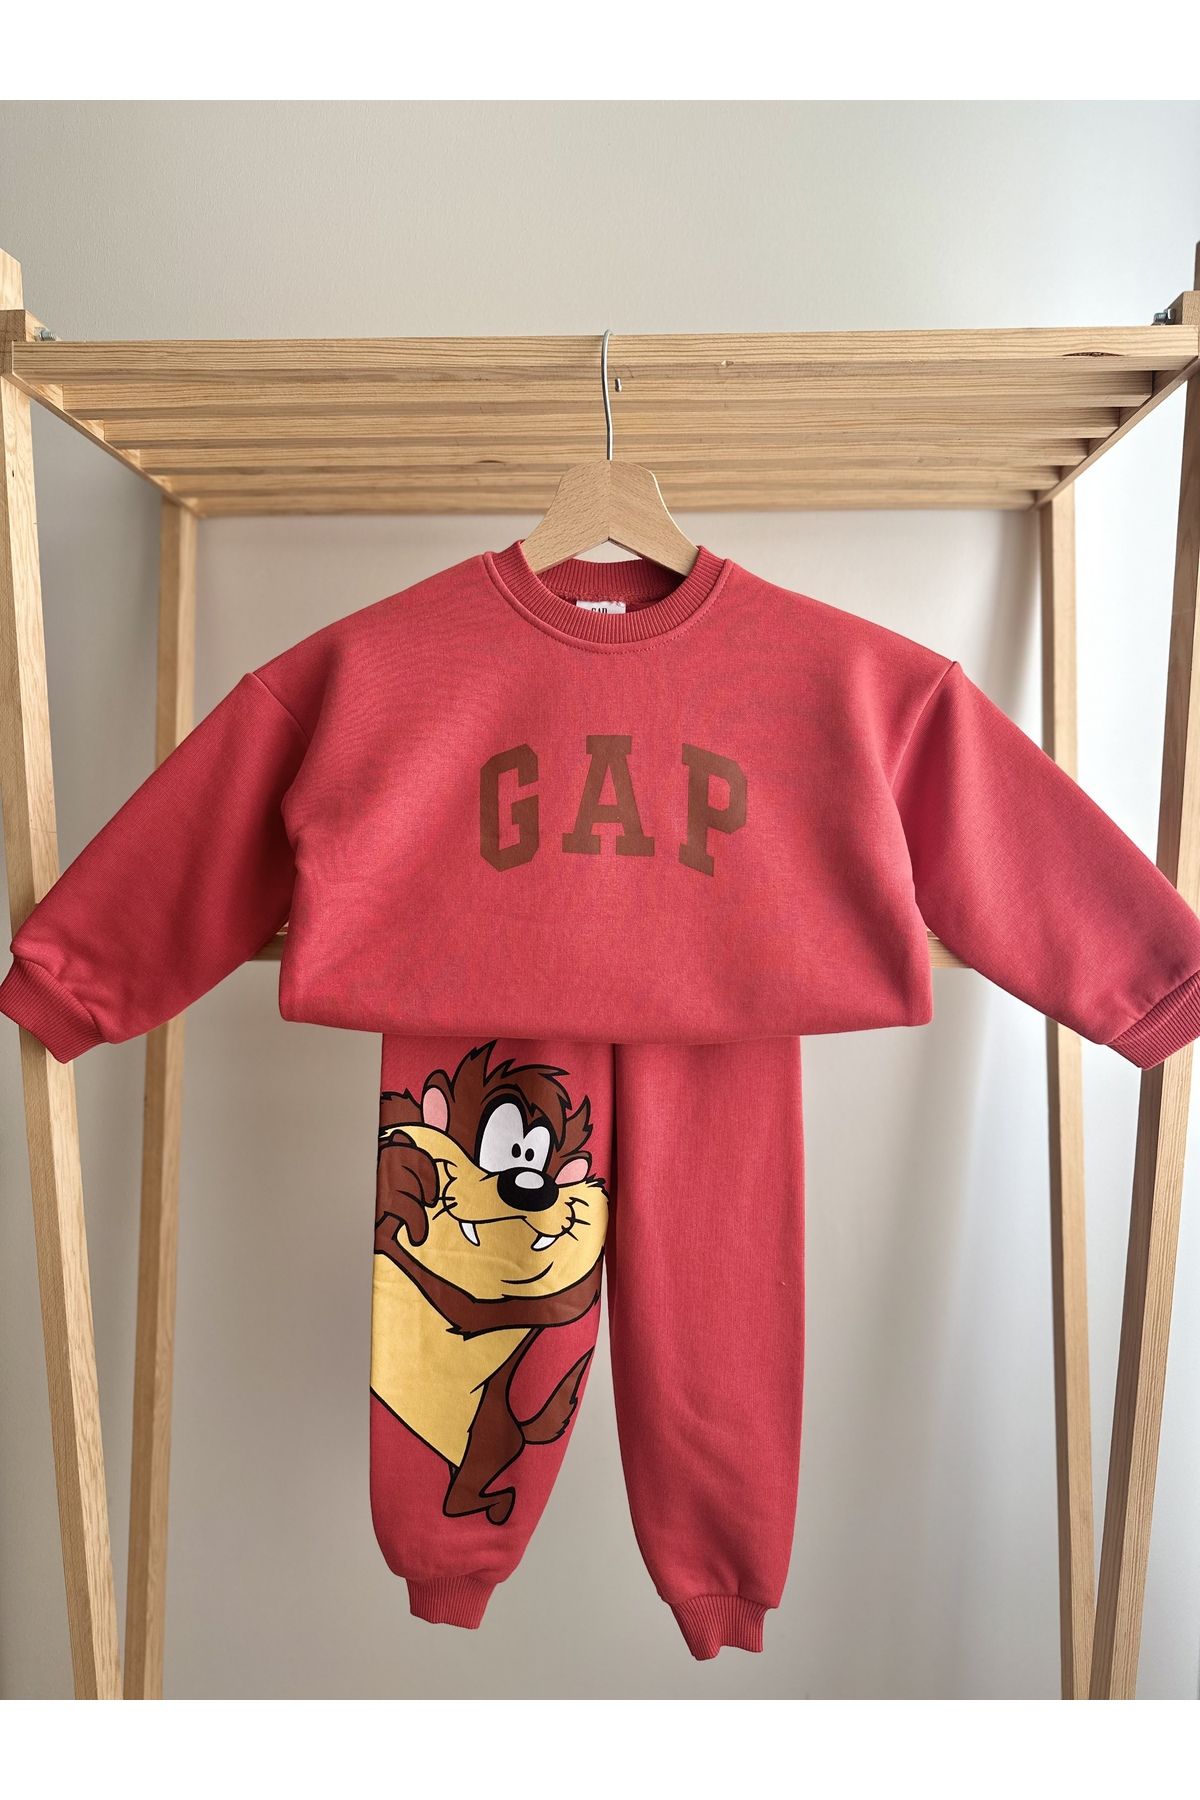 GAP Premium Kalite Gap Çocuk Eşofman Takımı / Çocuk Alt Üst Takım